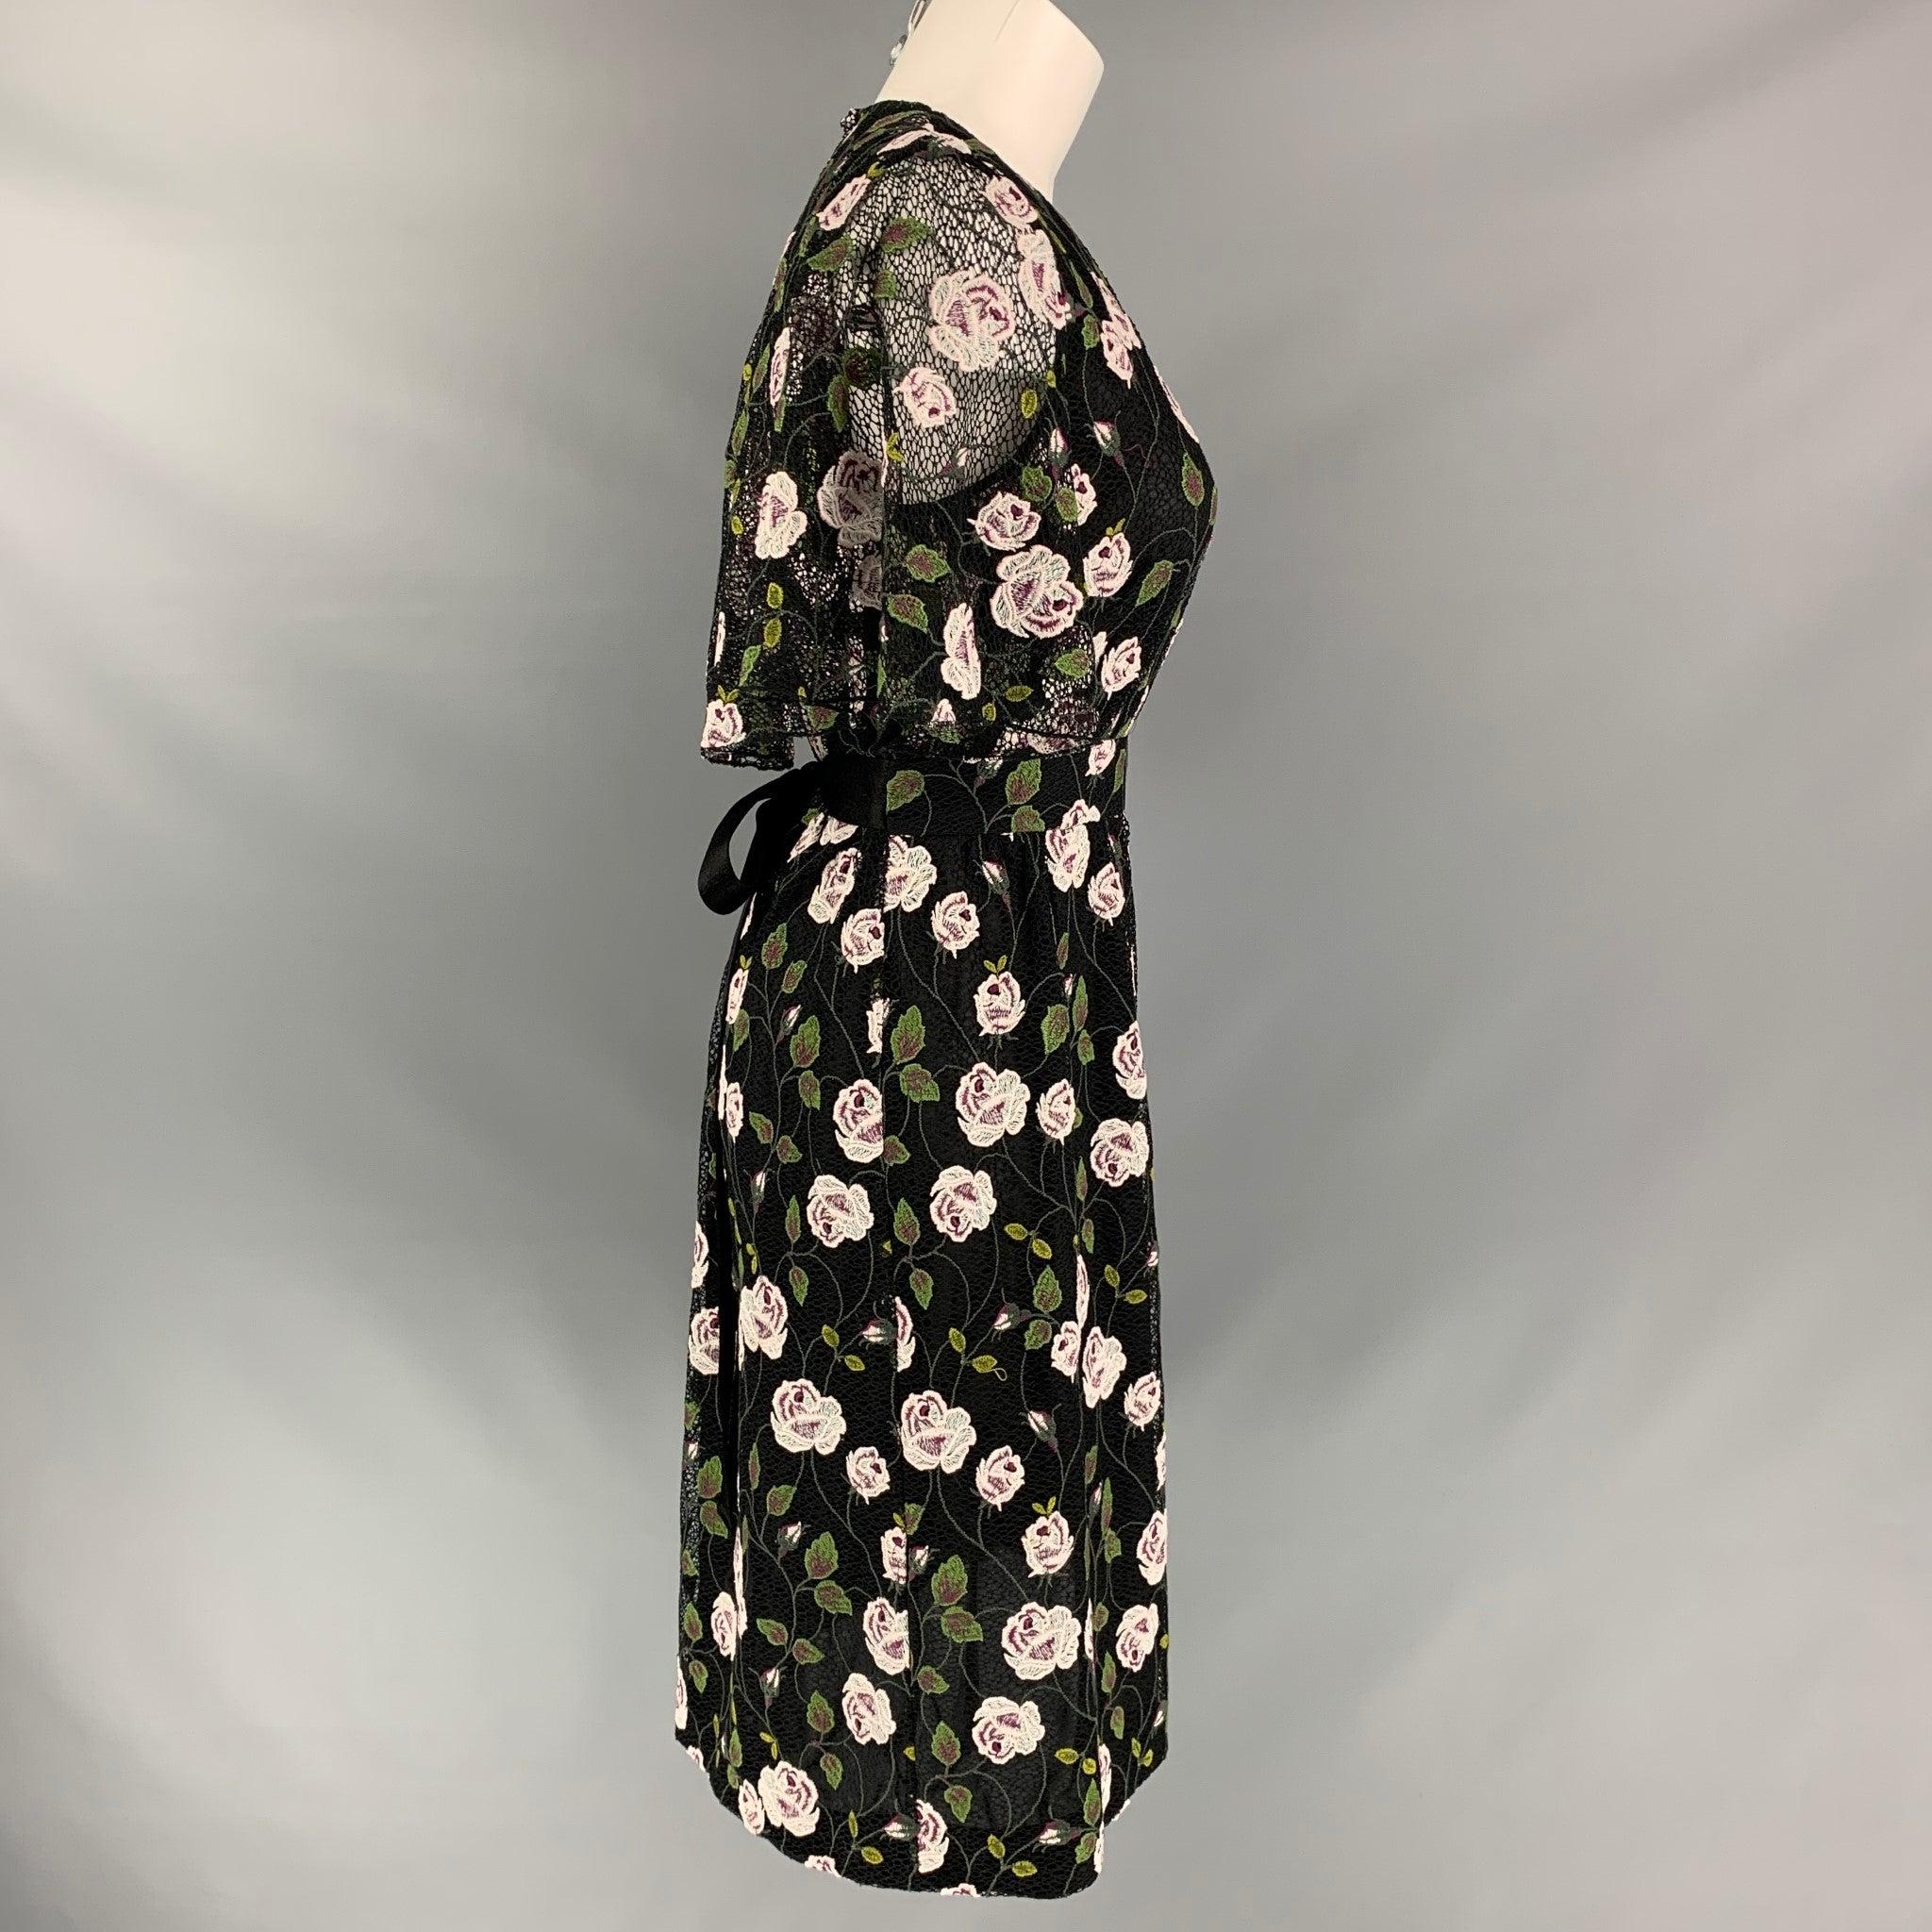 La robe à manches capes de GIAMBATTISTA VALLI est en dentelle de coton et de polyester noire et se ferme par une demi-fermeture éclair invisible sur le côté. Elle est ornée de dentelle florale, de manches capes transparentes et d'un lien ajustable